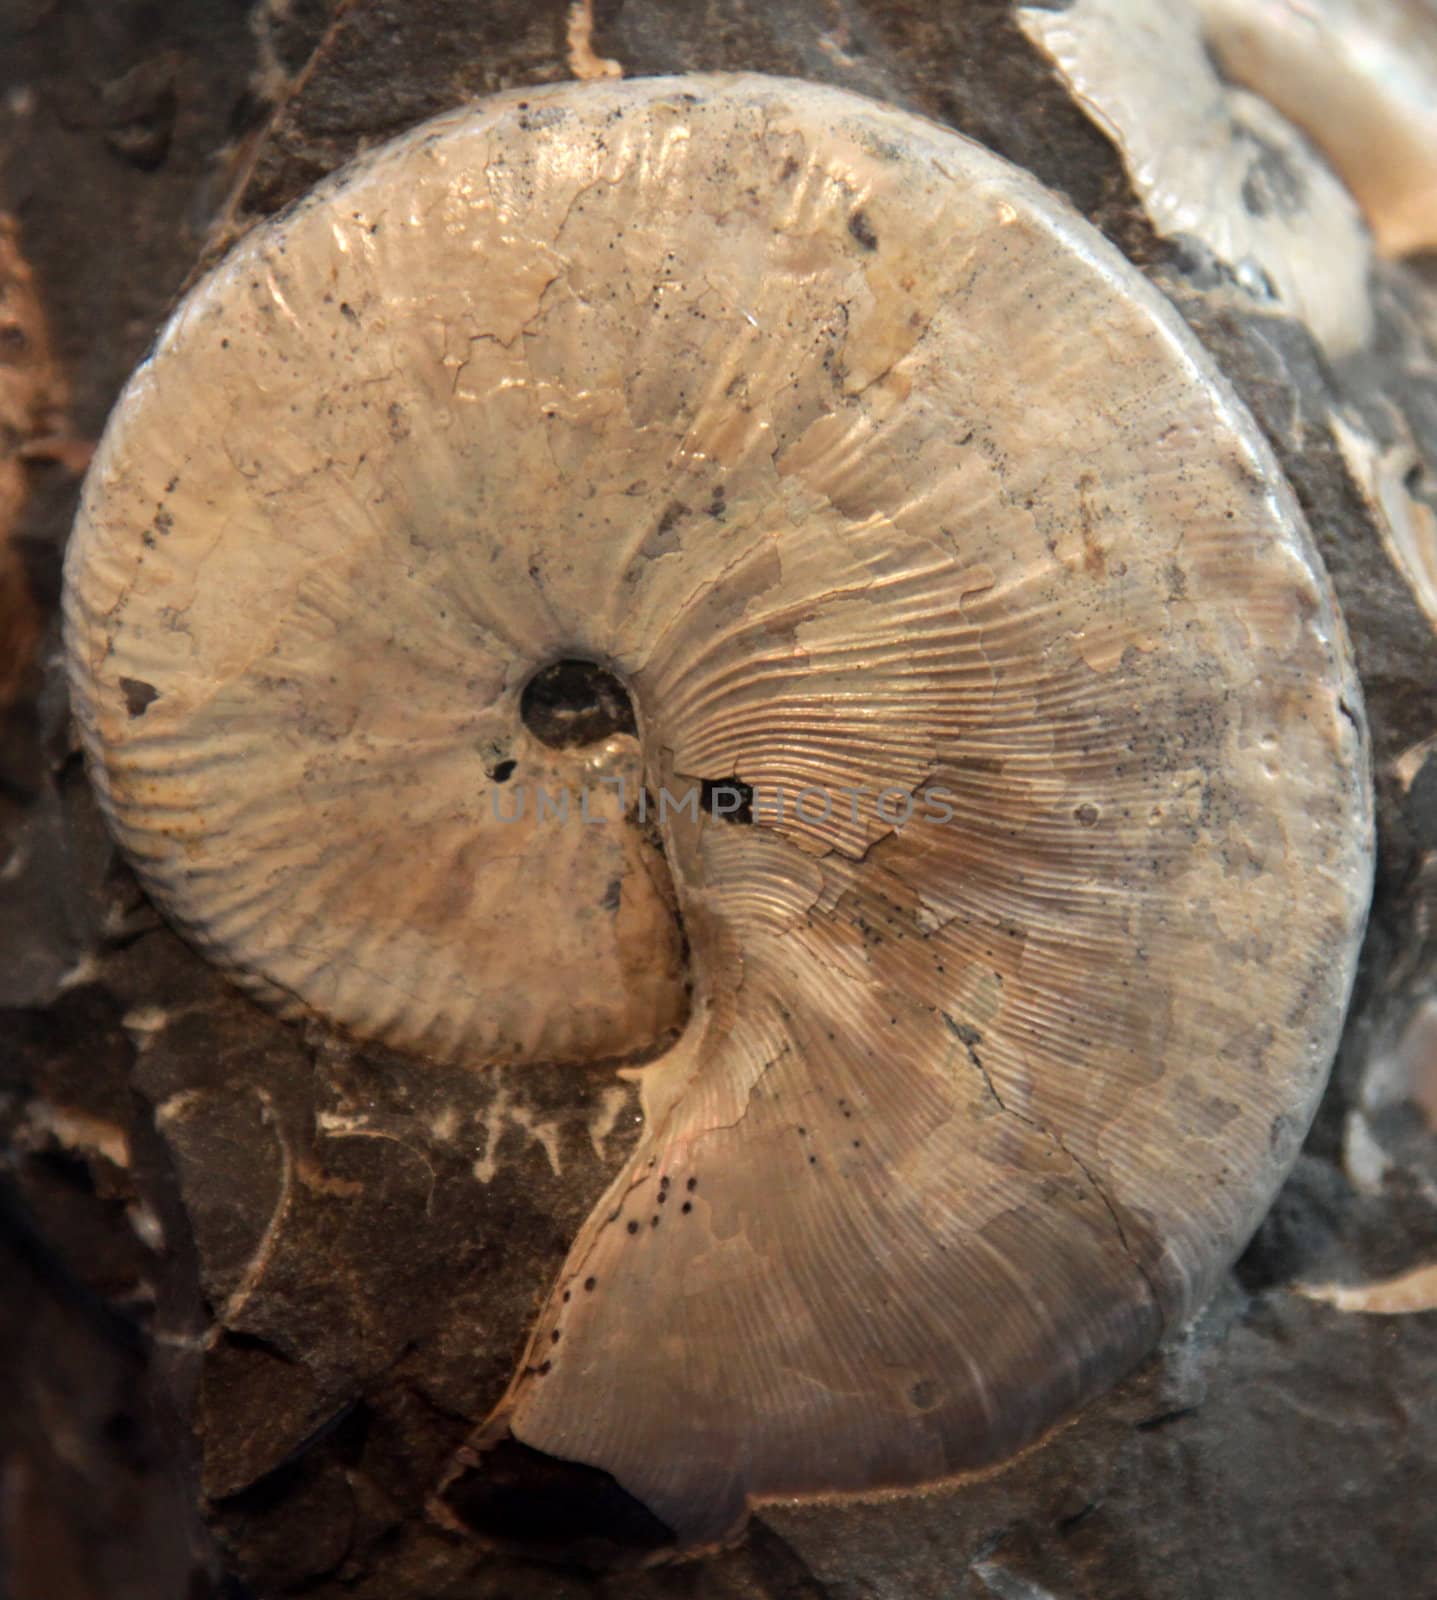 An closeup of a crustacean fossil.
